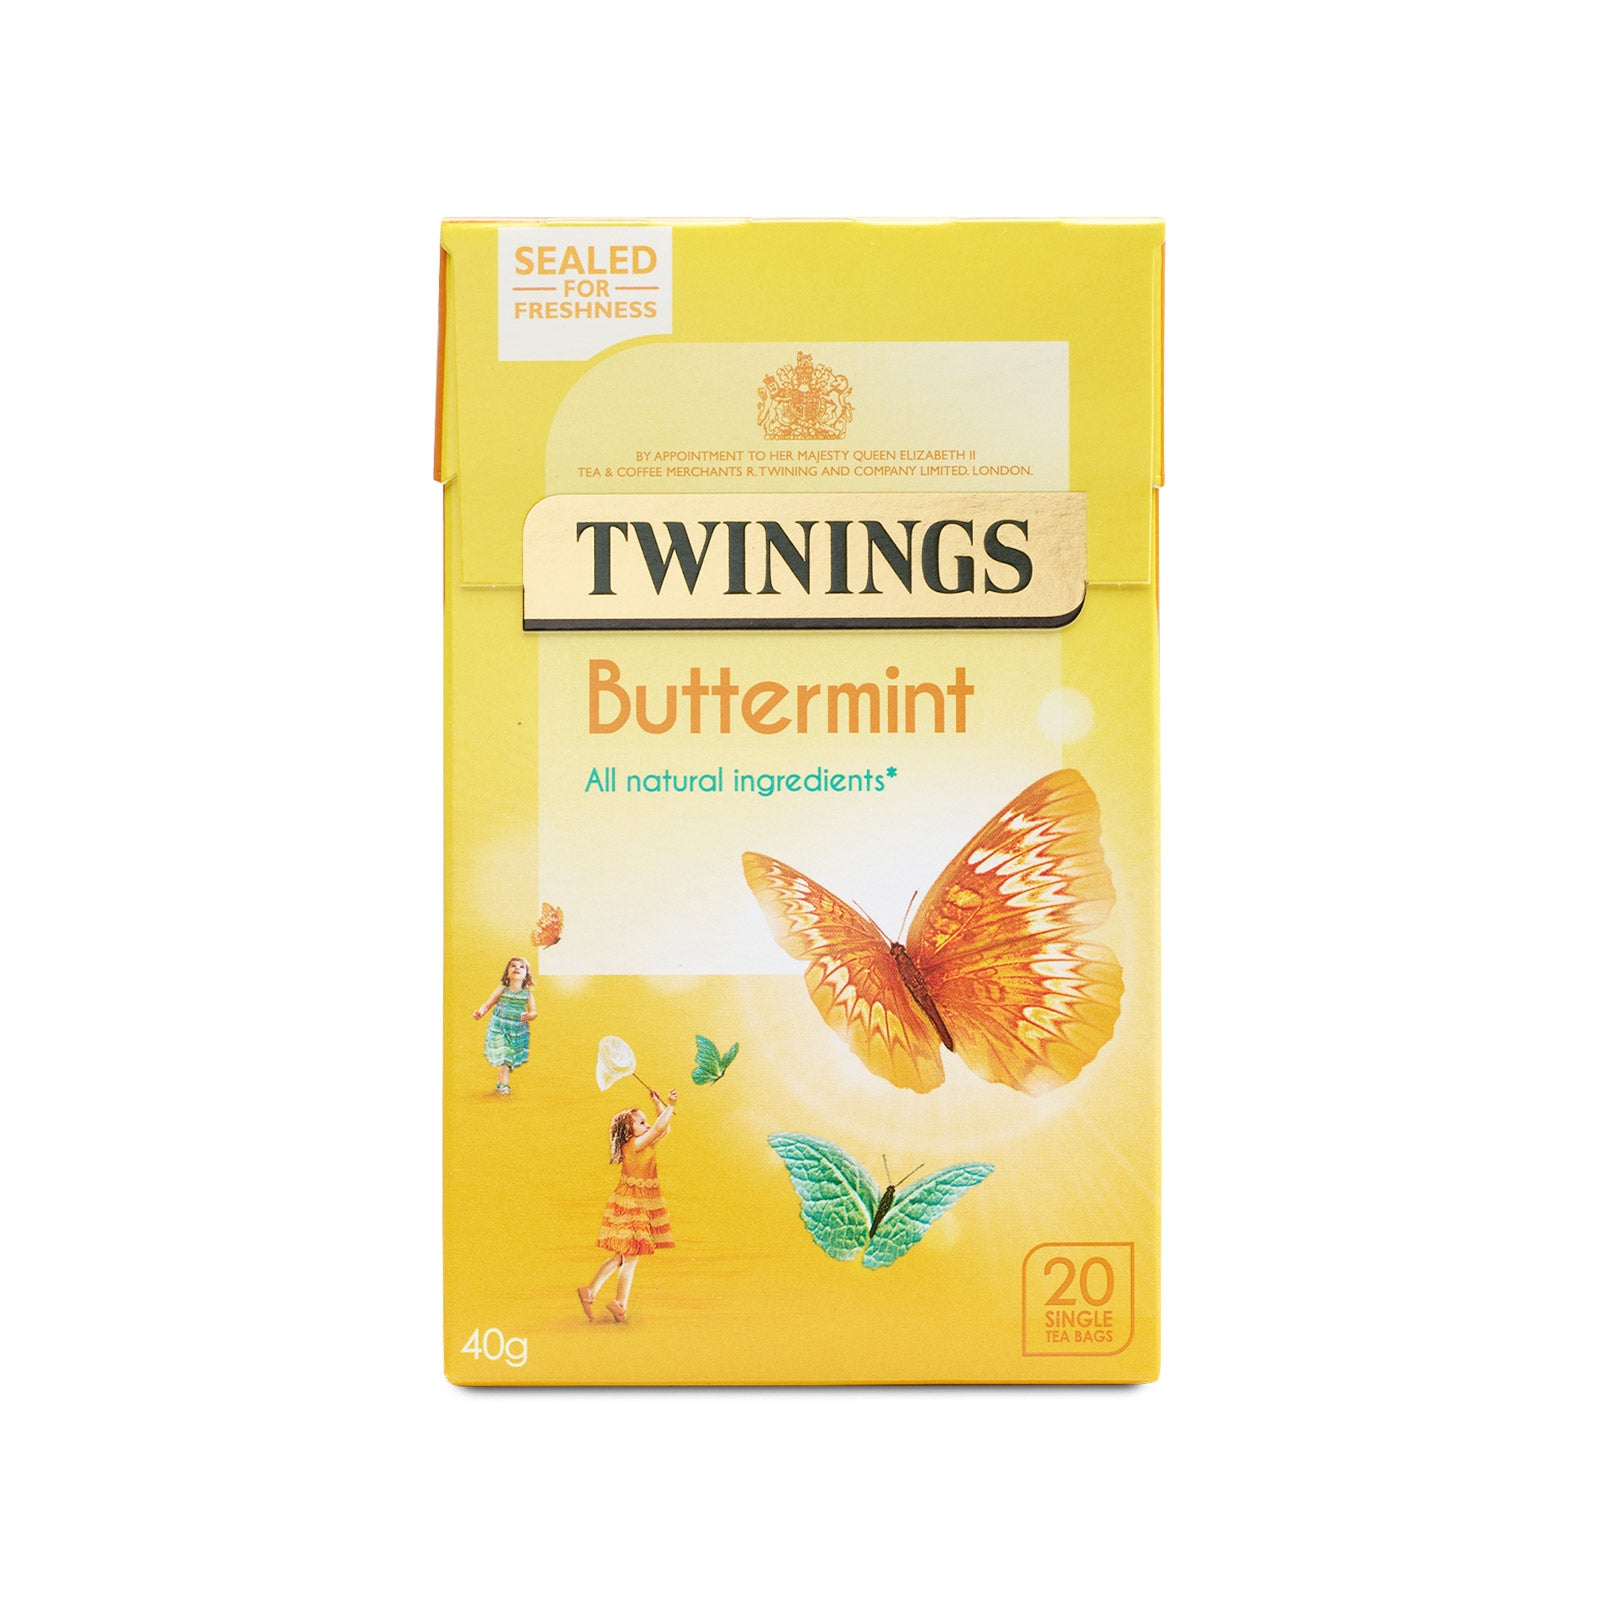 Twinnings Vanilla Tea x20